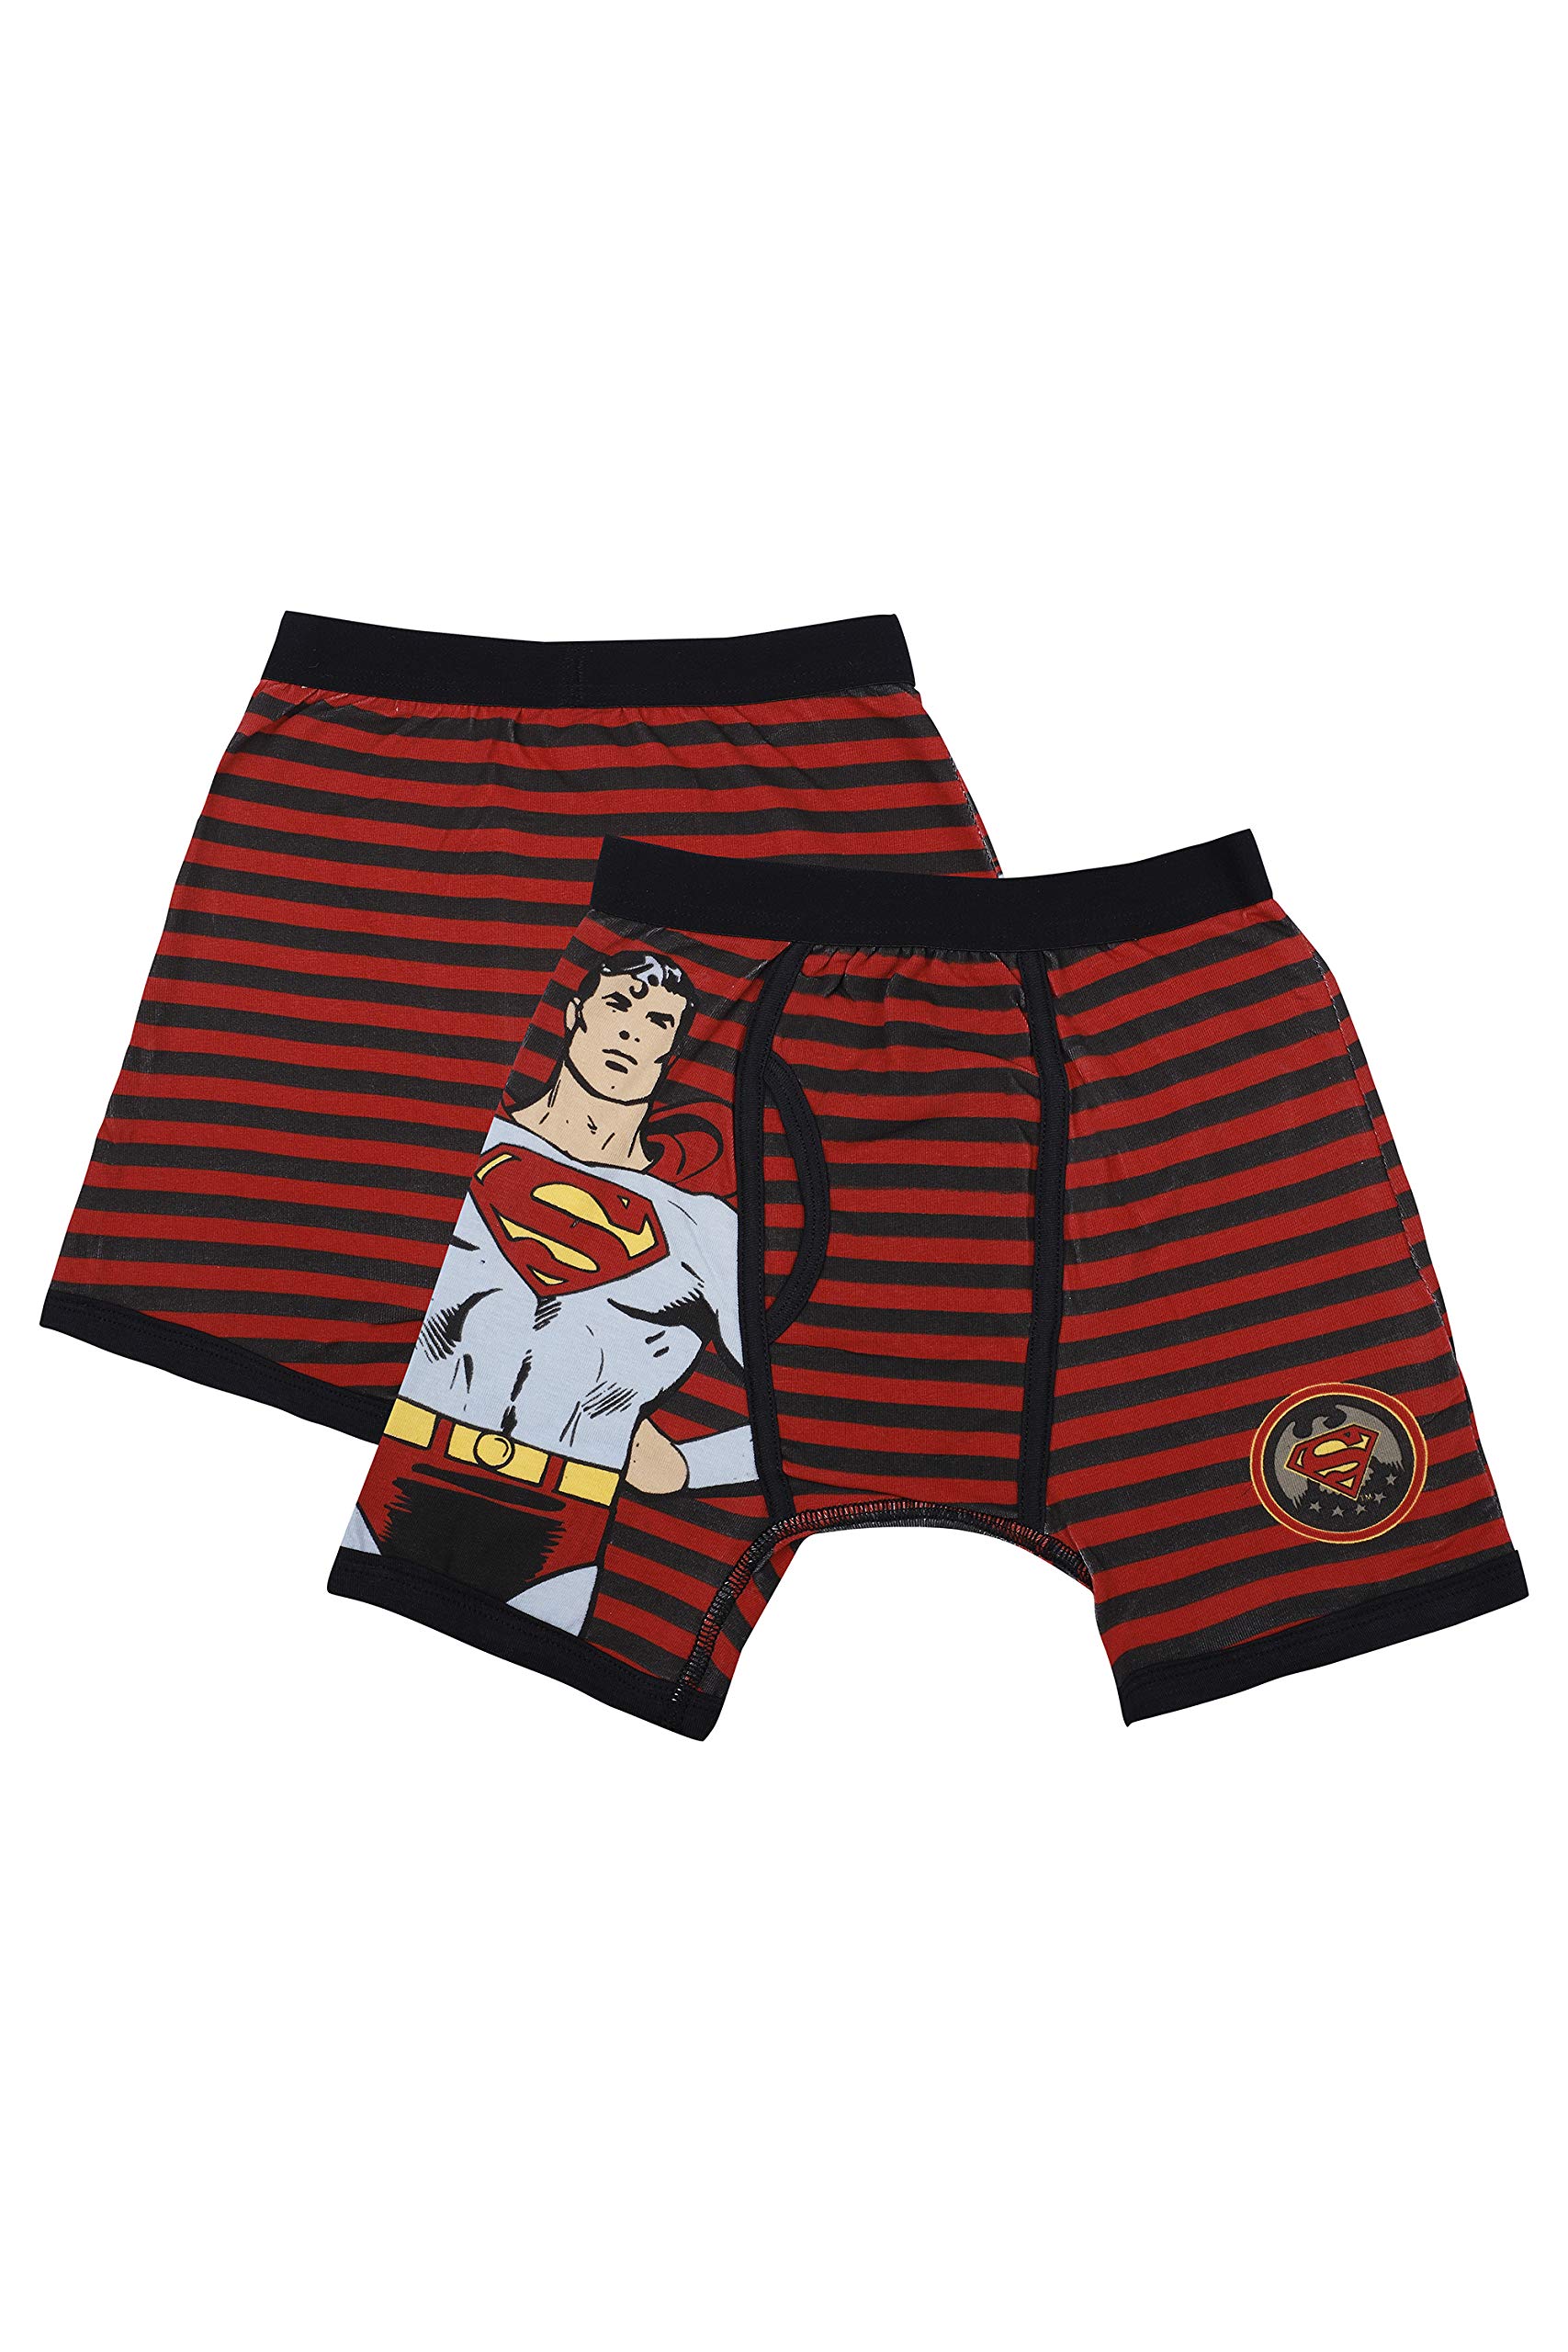 DC Comics Boys' Little Batman 2 Pack Vintage Superman Boxer Brief Underwear